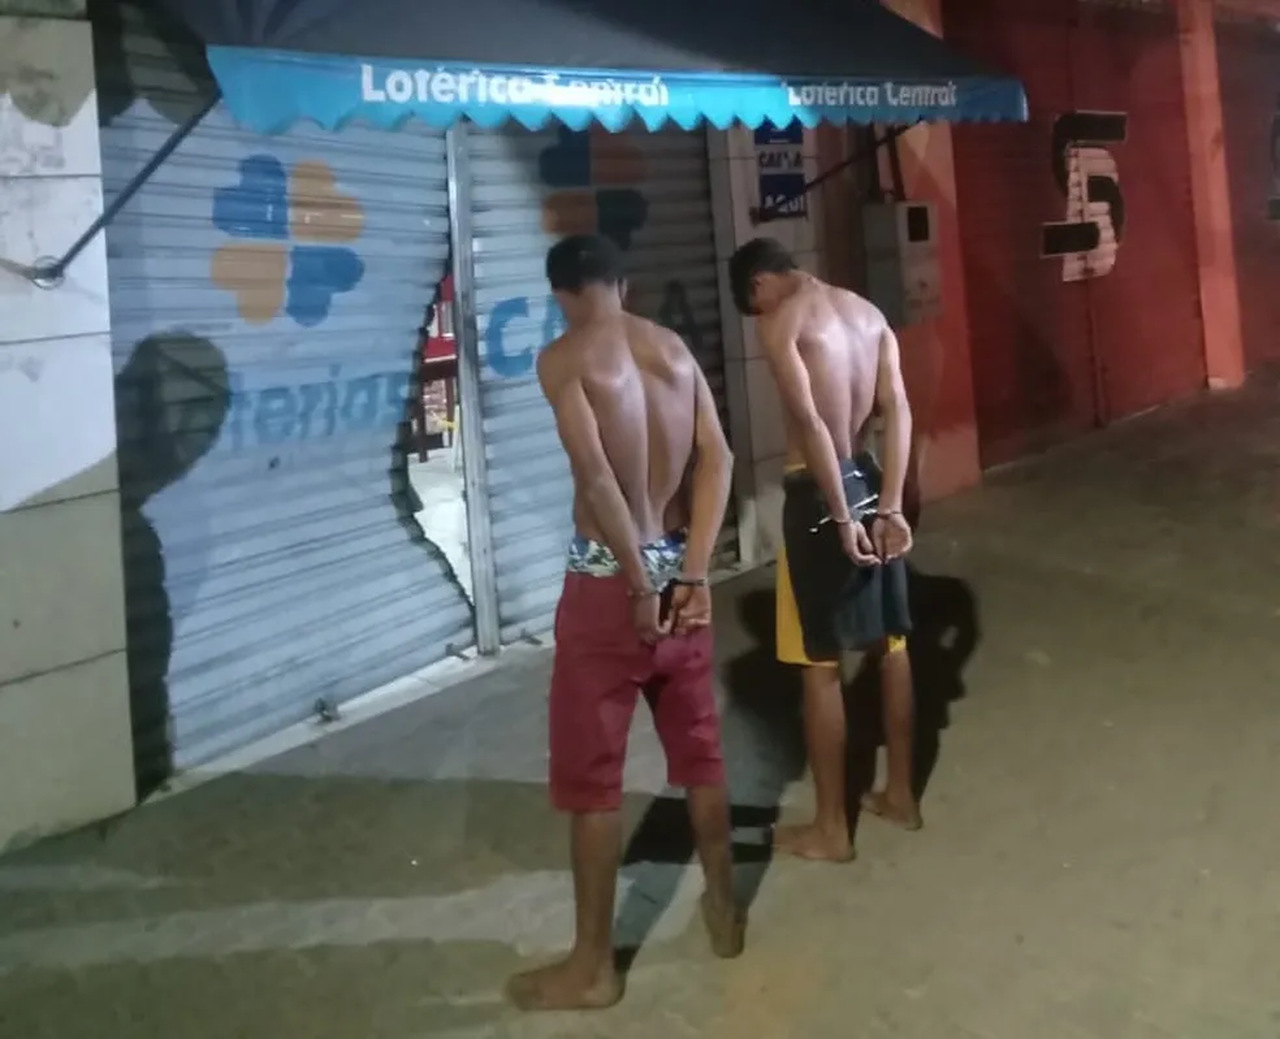 Dois homens são presos após invadirem lotérica de Buriti do Tocantins